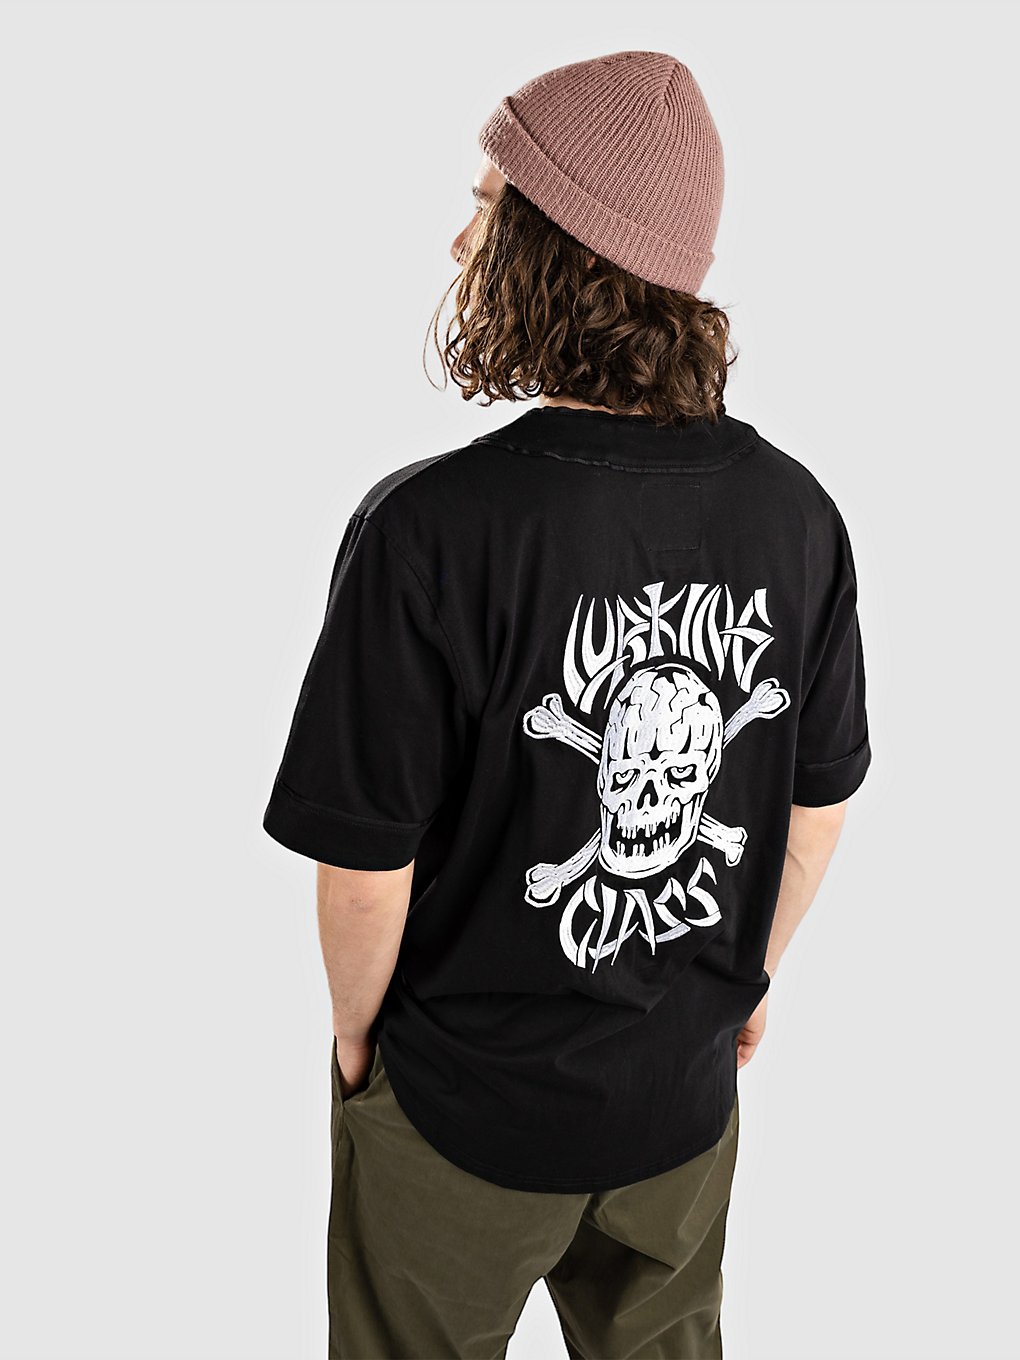 Lurking Class Bones Button Up Jersey T-Shirt black kaufen